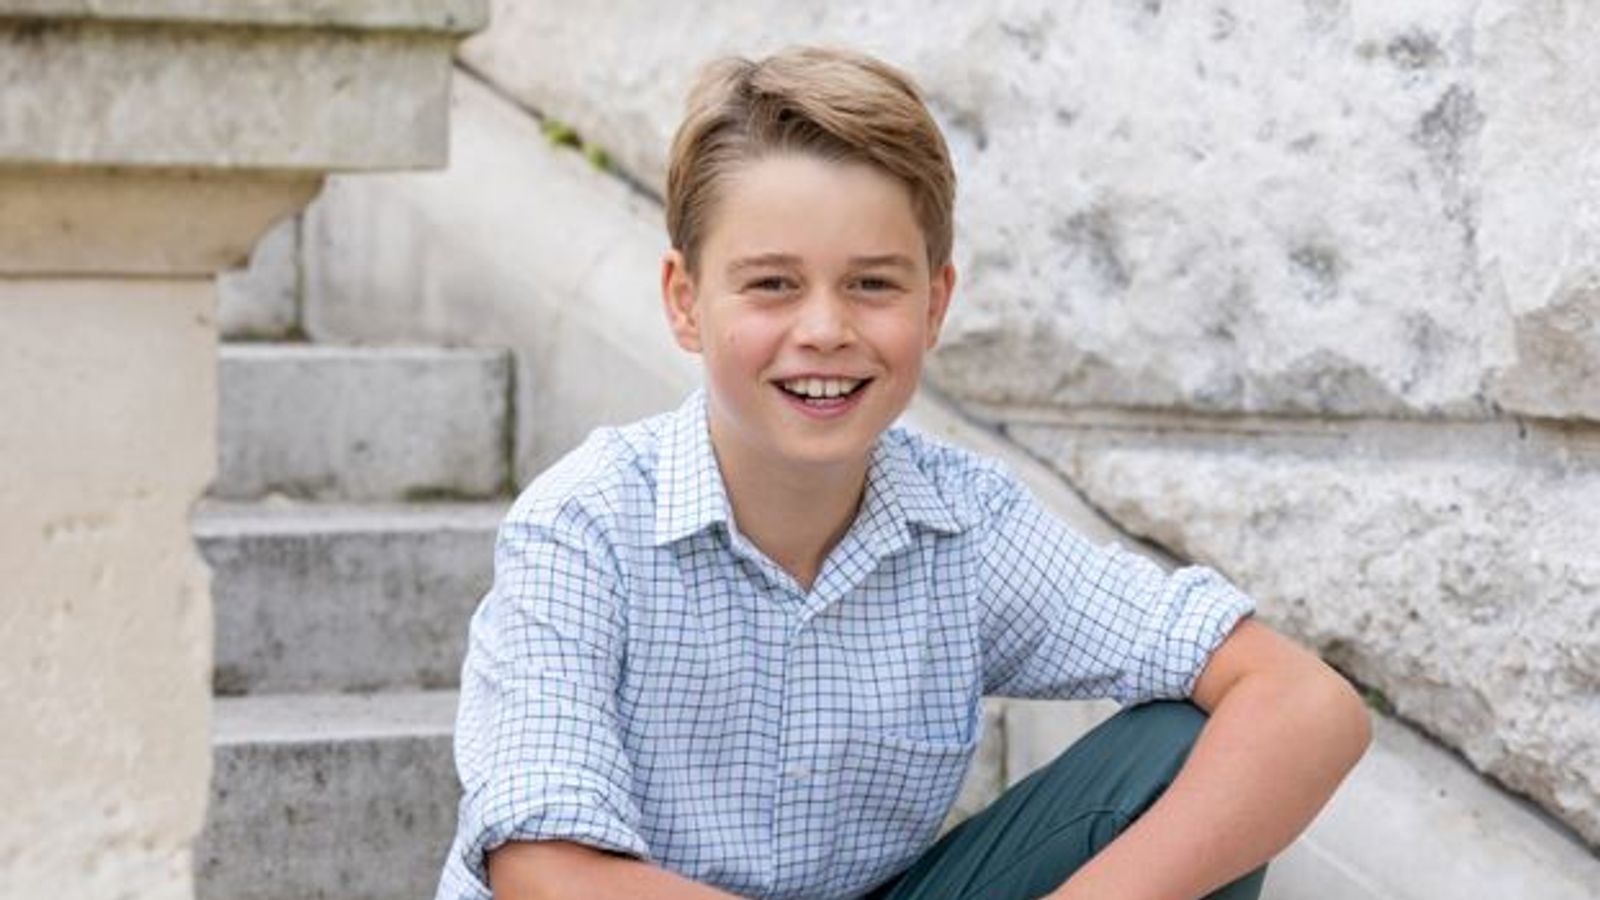 Принц Джордж: улыбающийся будущий король появляется на новой фотографии по случаю своего десятого дня рождения |  Новости Великобритании